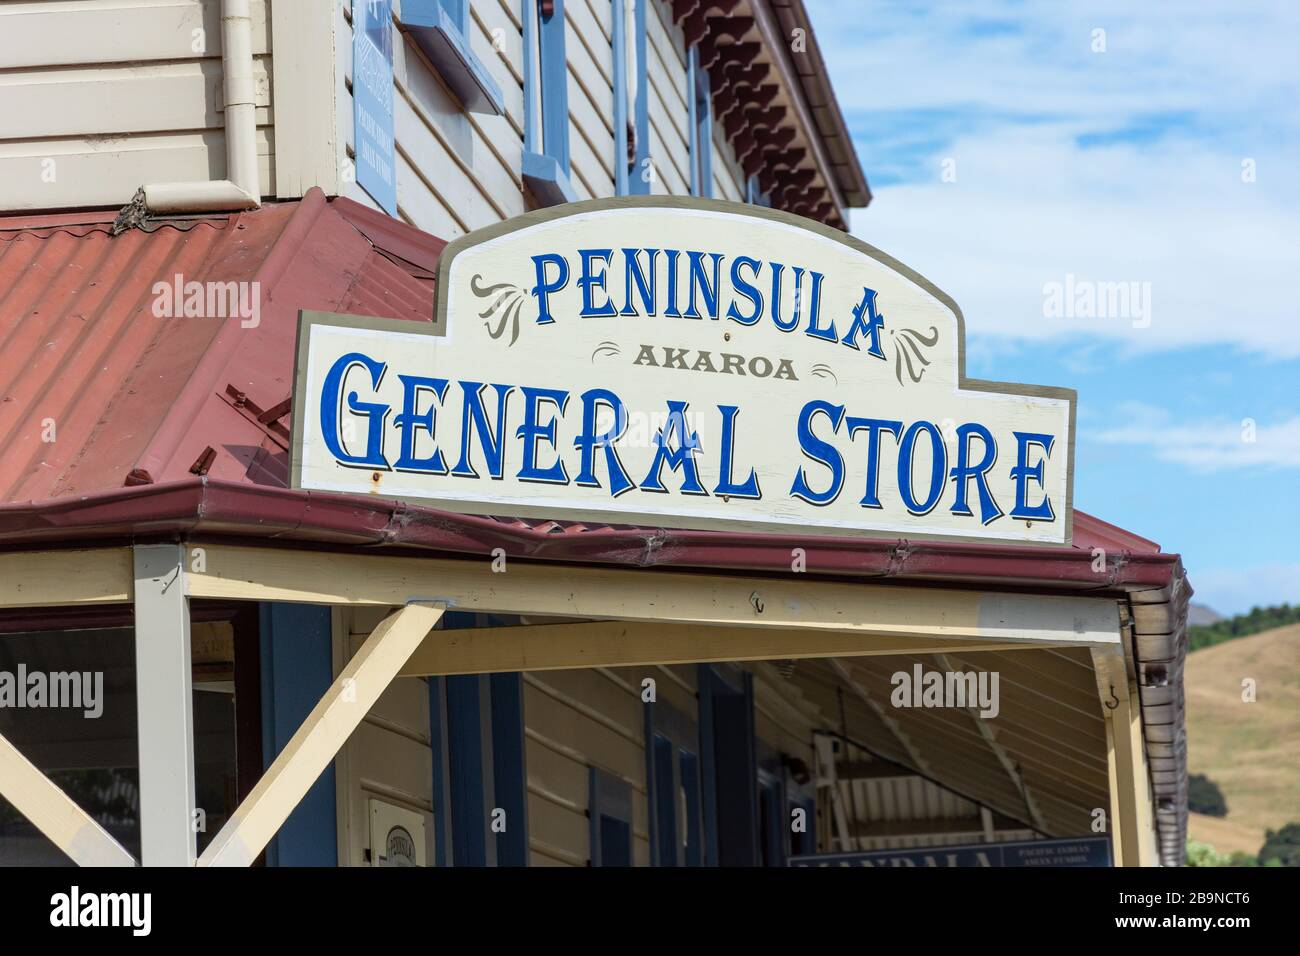 Panneau du magasin général de la péninsule d'Akaroa, rue Lavaud, Akaroa, péninsule Banks, région de Canterbury, Nouvelle-Zélande Banque D'Images